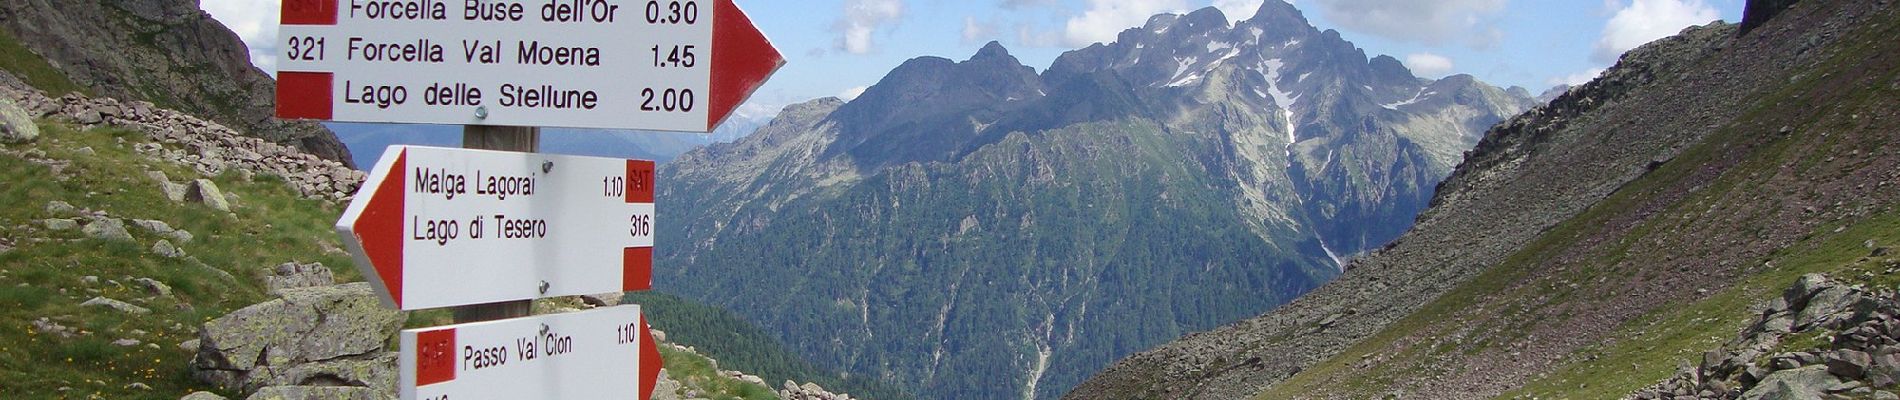 Tour Zu Fuß Zanonberg) - Sentiero alpinistico attrezzato 